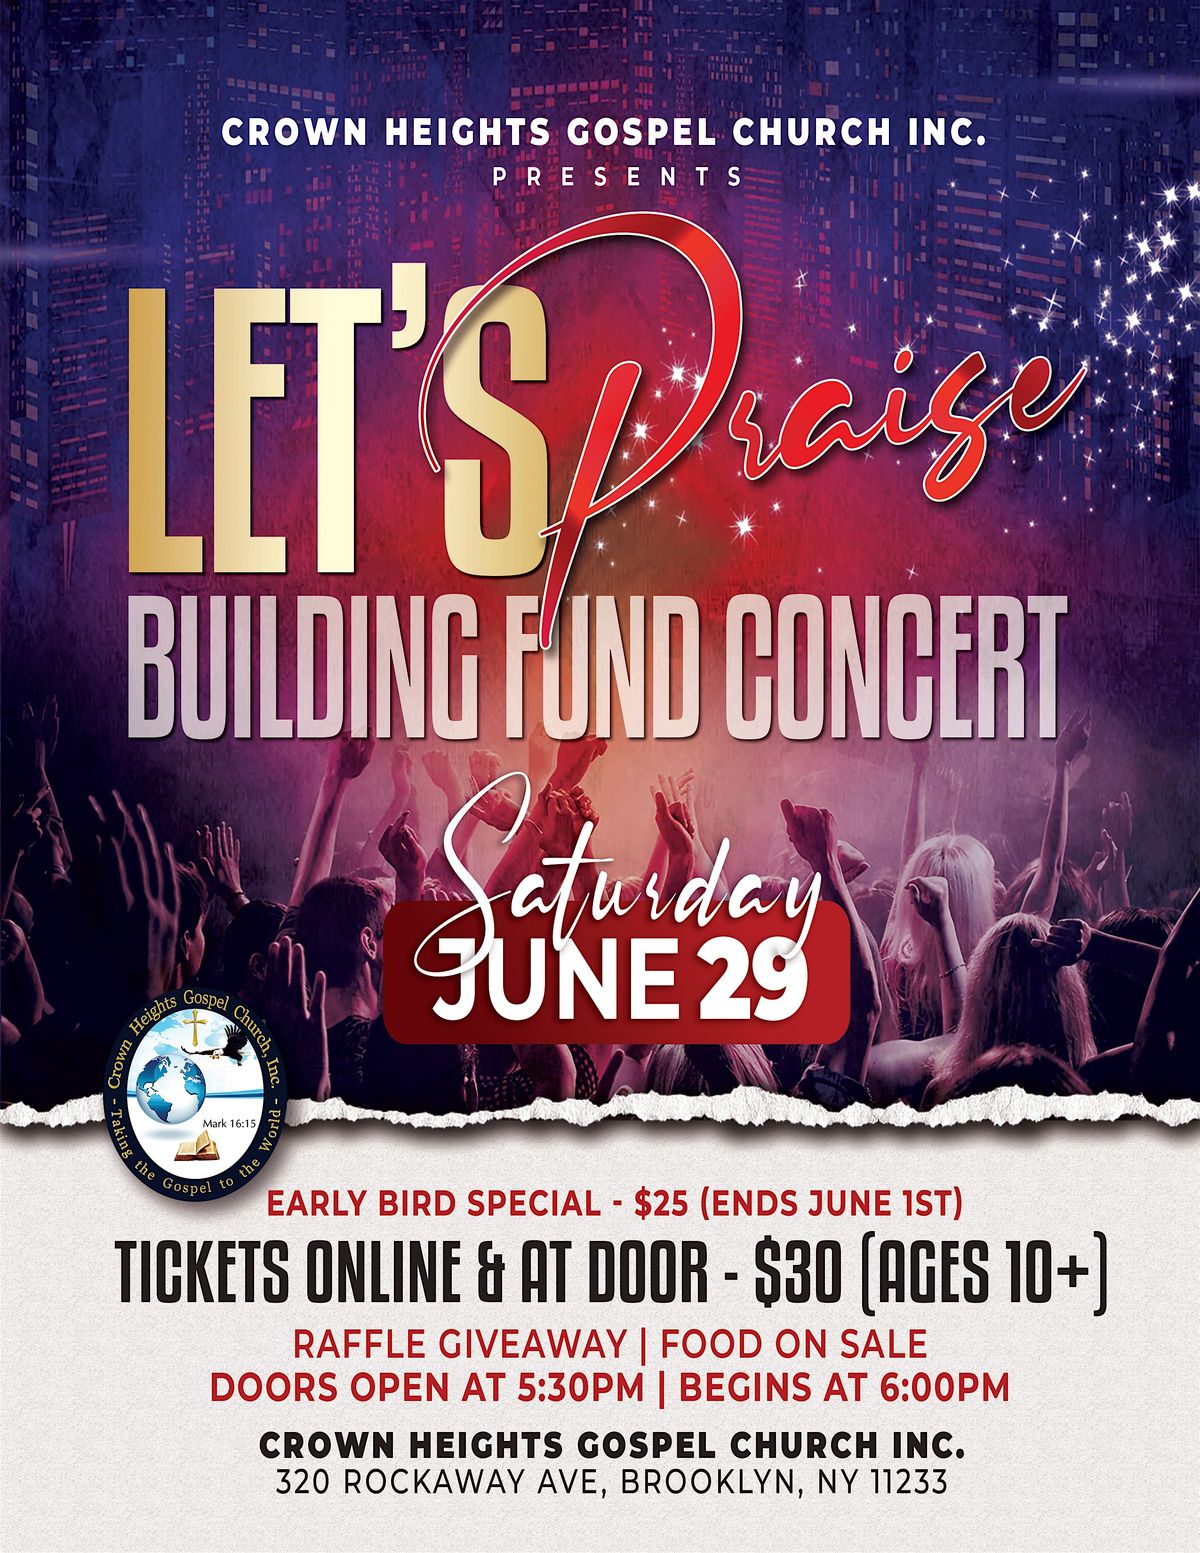 Let's Praise ! - CHGC's Building Fund Concert